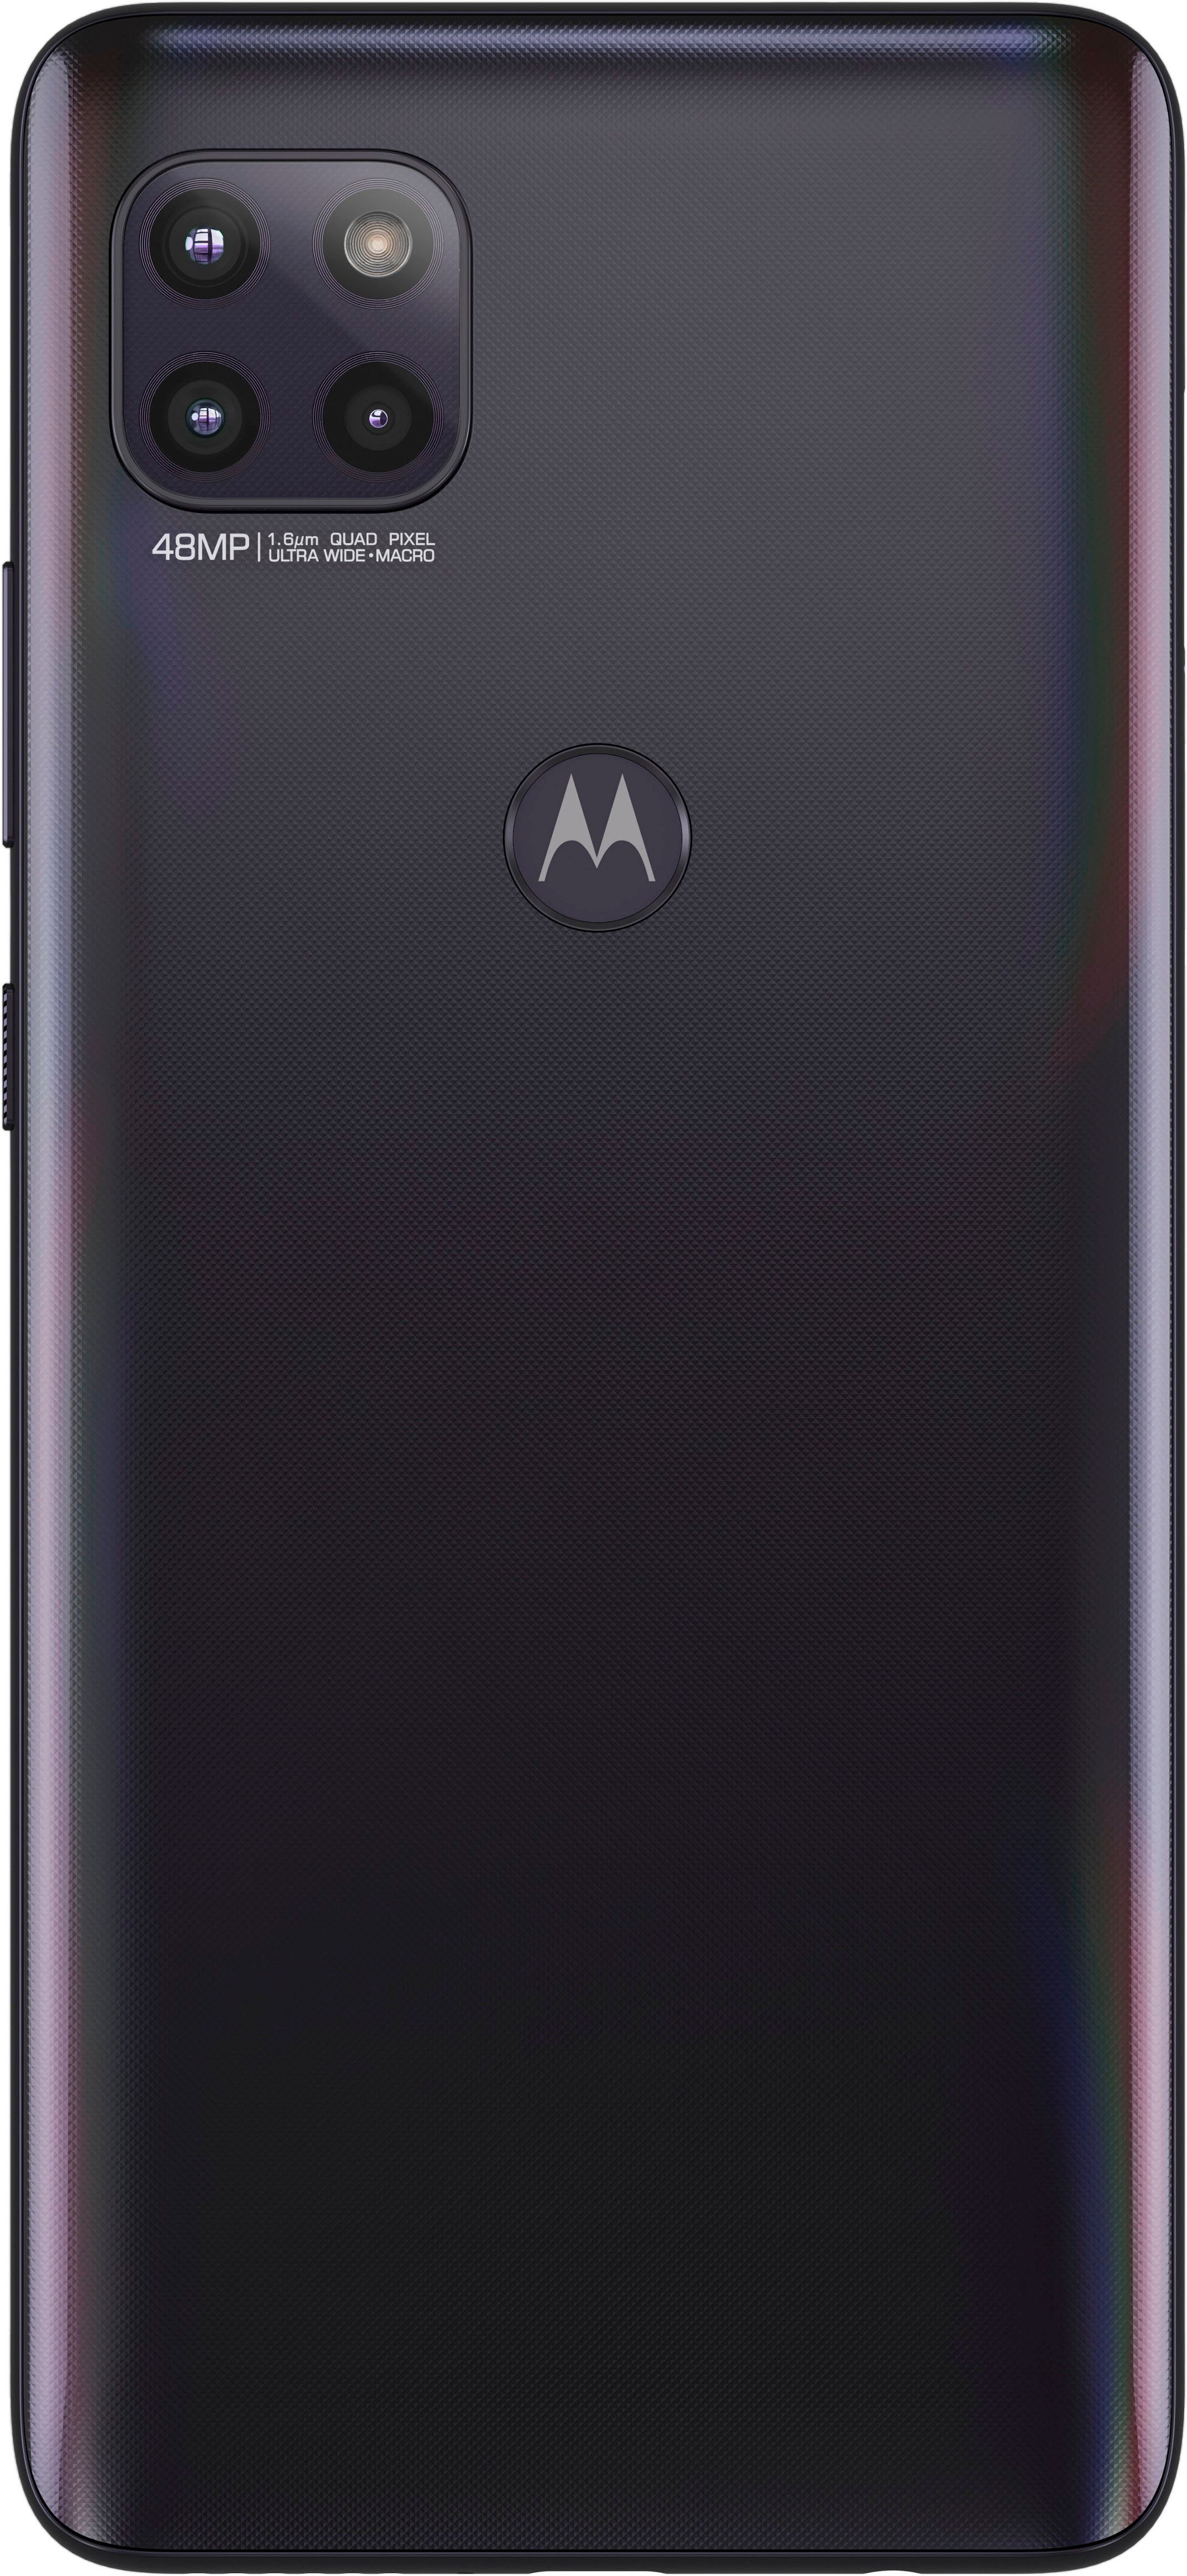 Back View: Motorola - MM1000 MoCA Adapter for Ethernet - Black